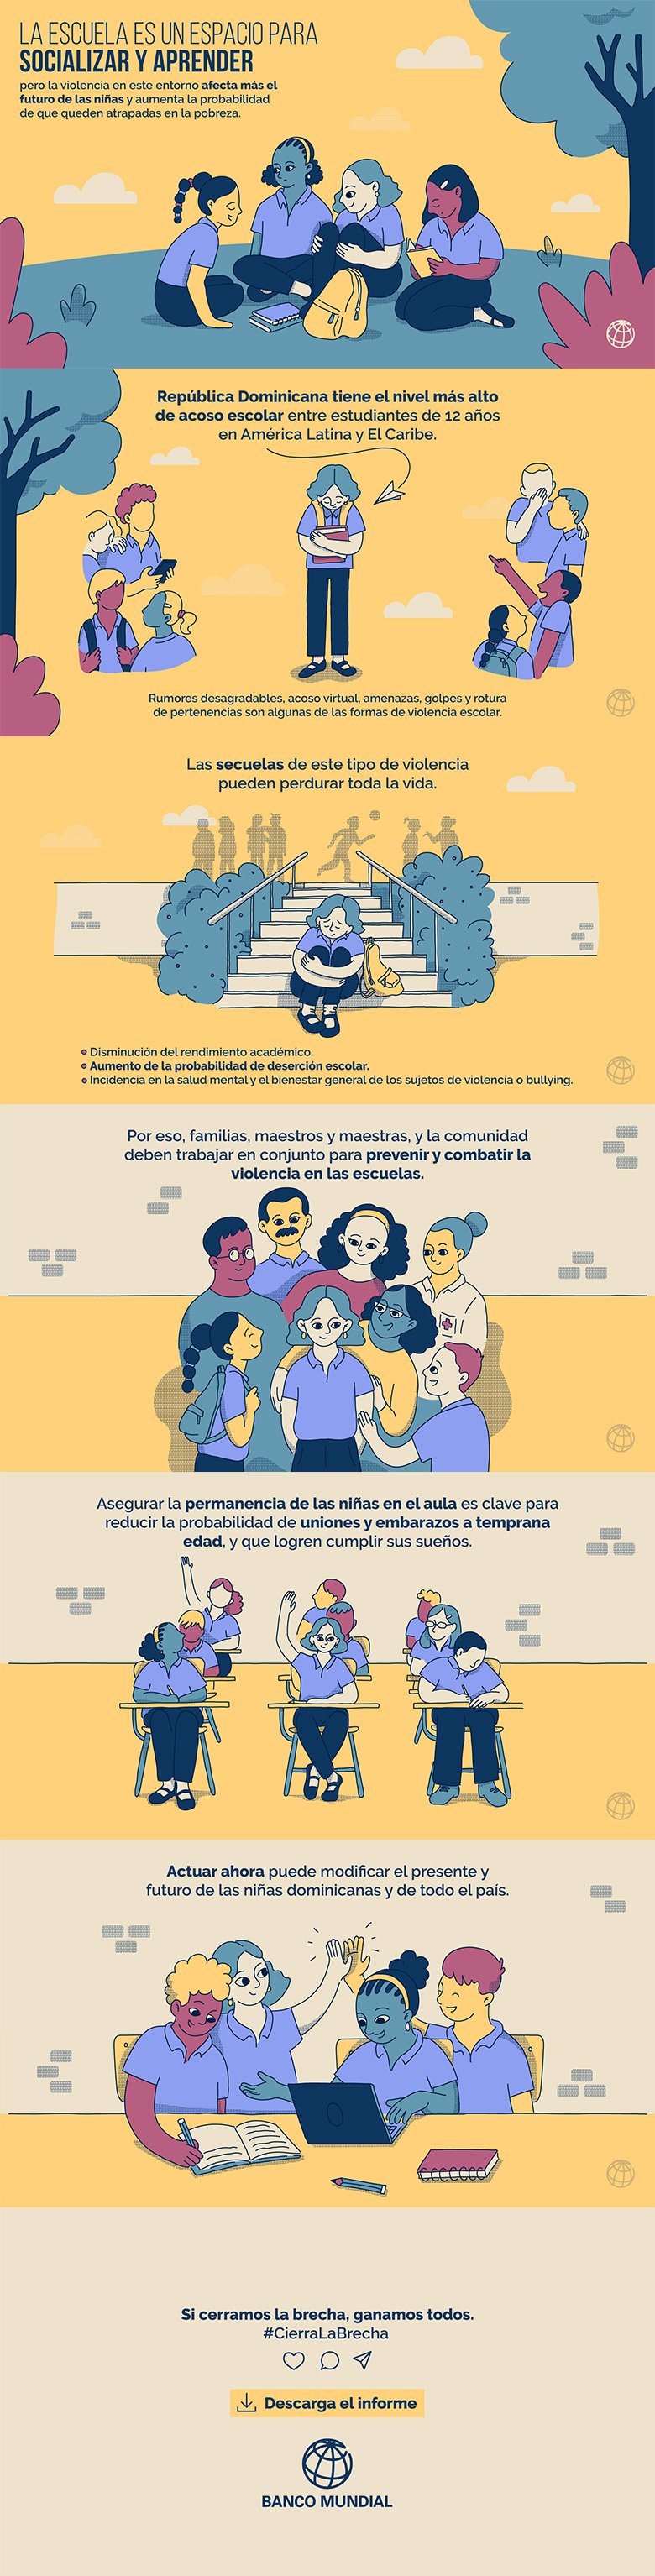 Infografía Género República Dominicana - Abandono escolar